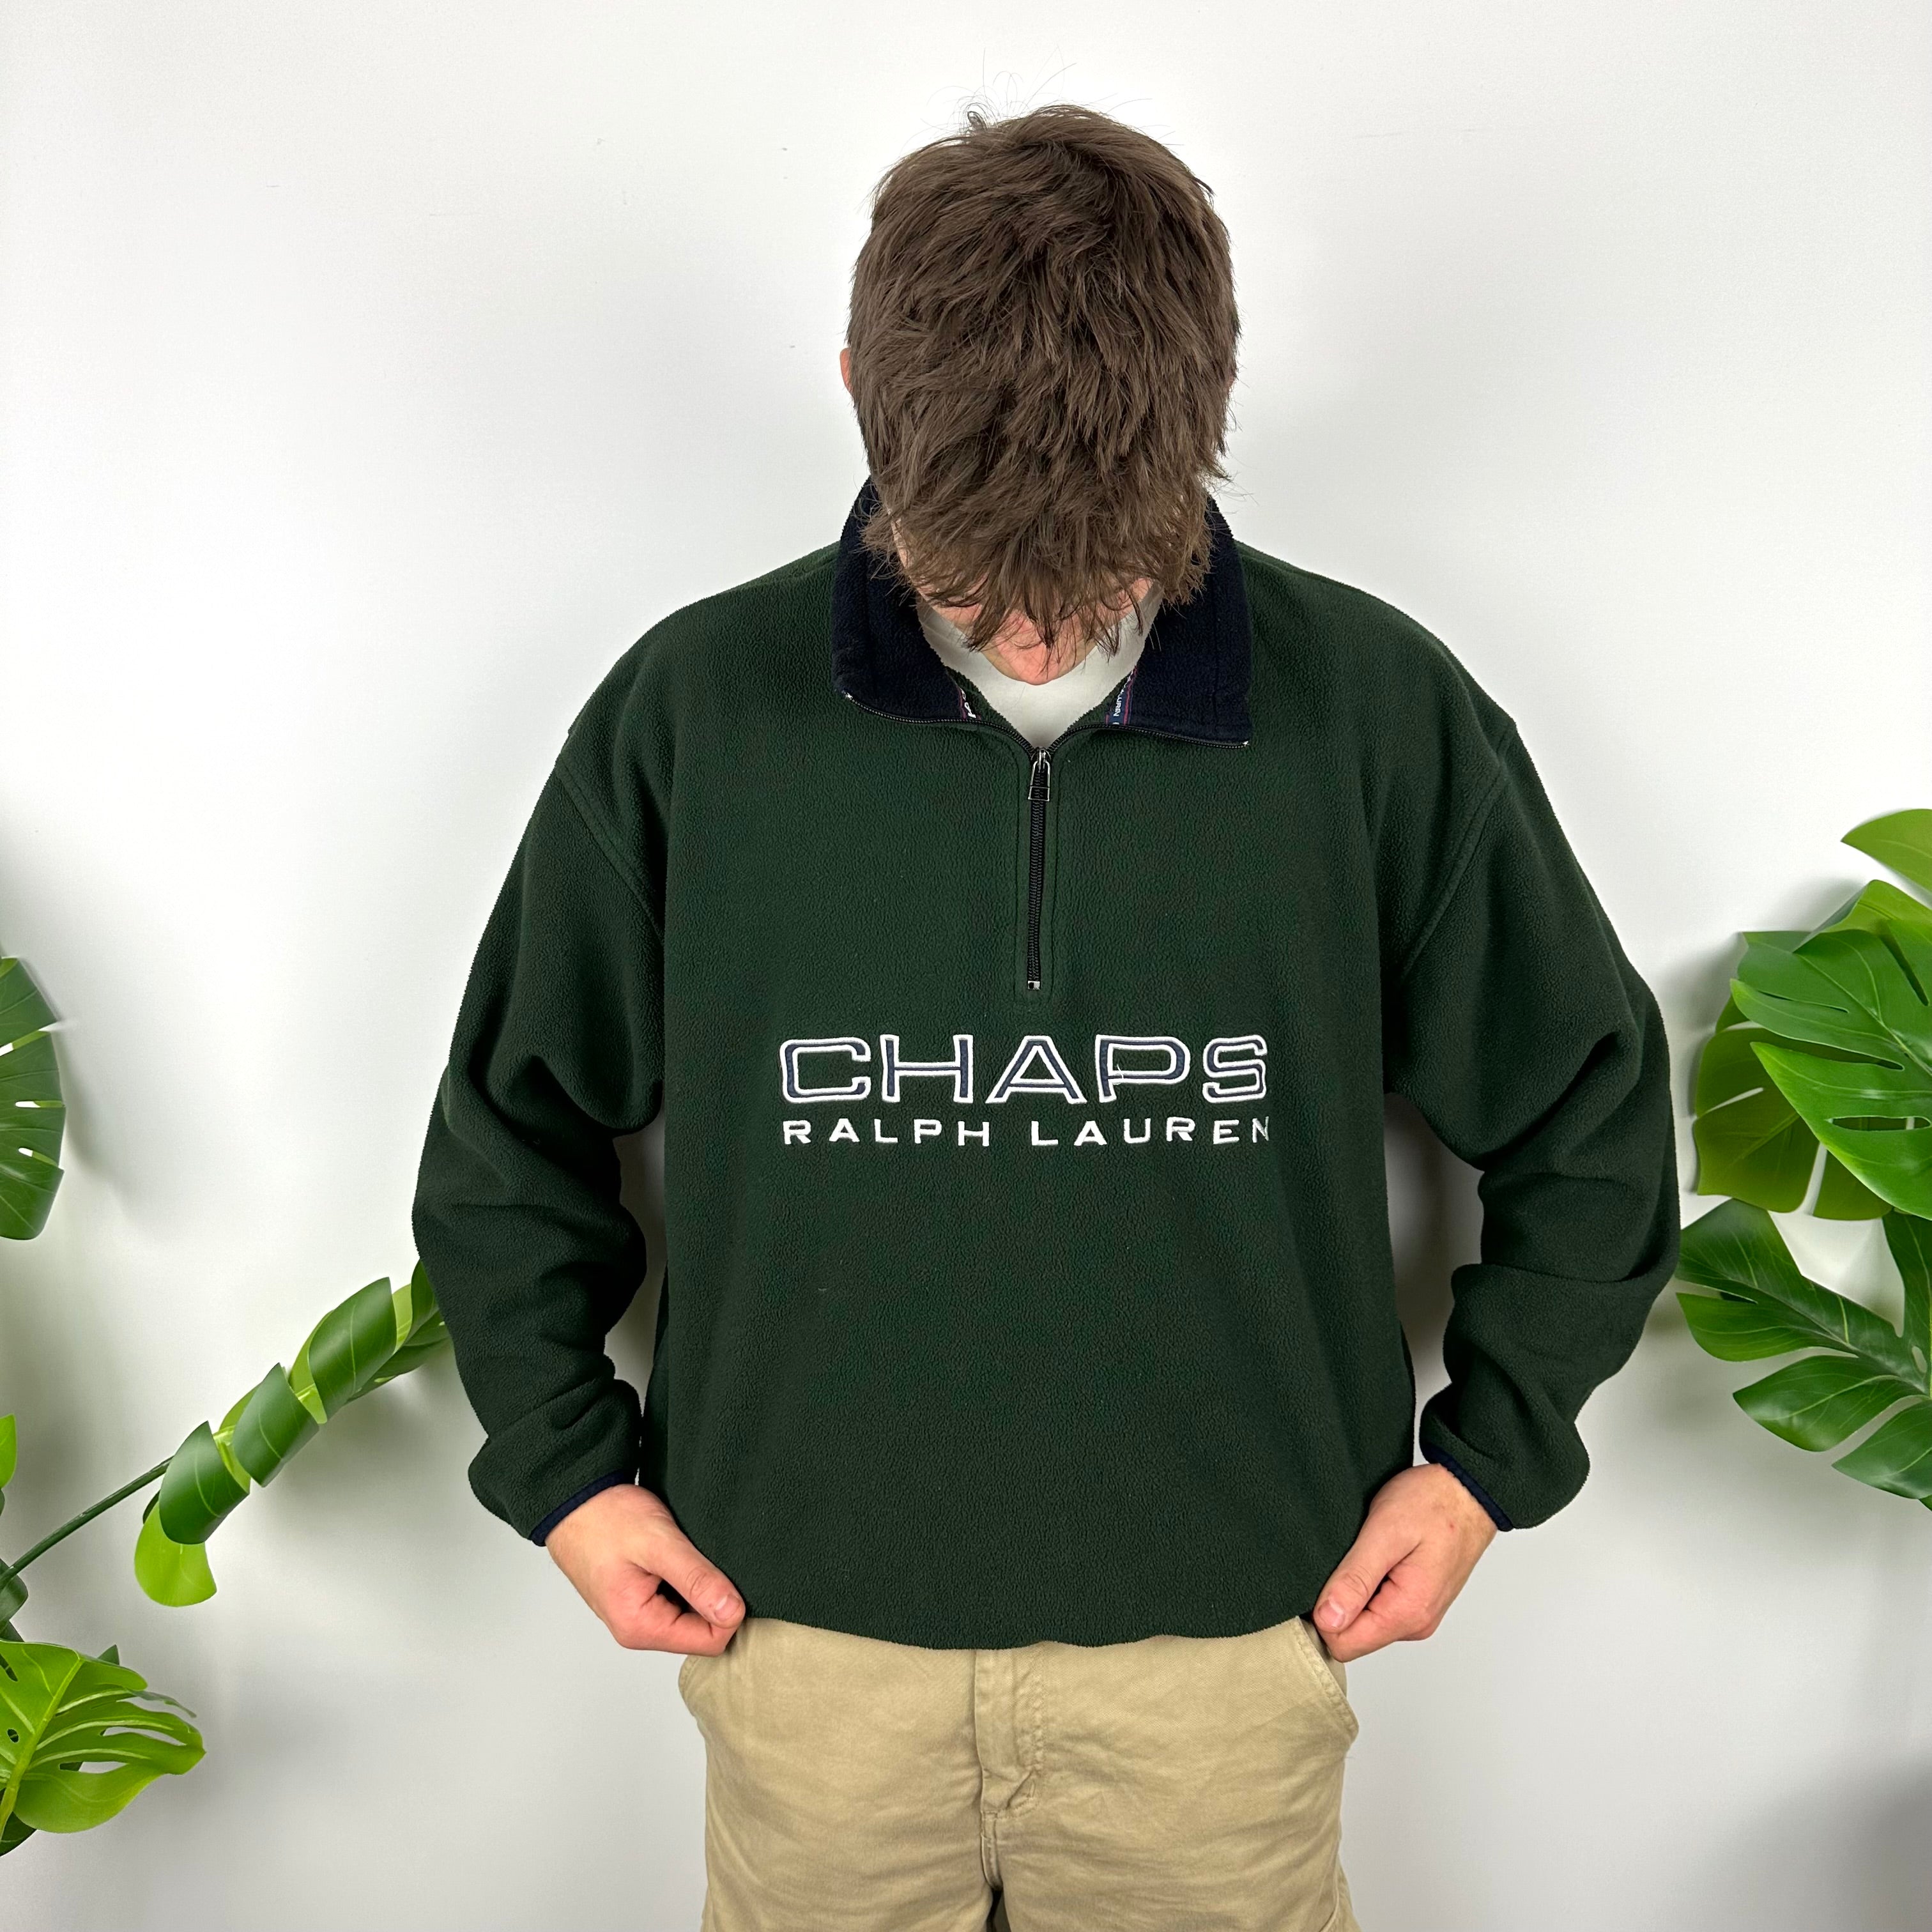 Chaps Ralph Lauren Green Embroidered Spell Out Teddy Bear Fleece Quarter Zip Sweatshirt (M)